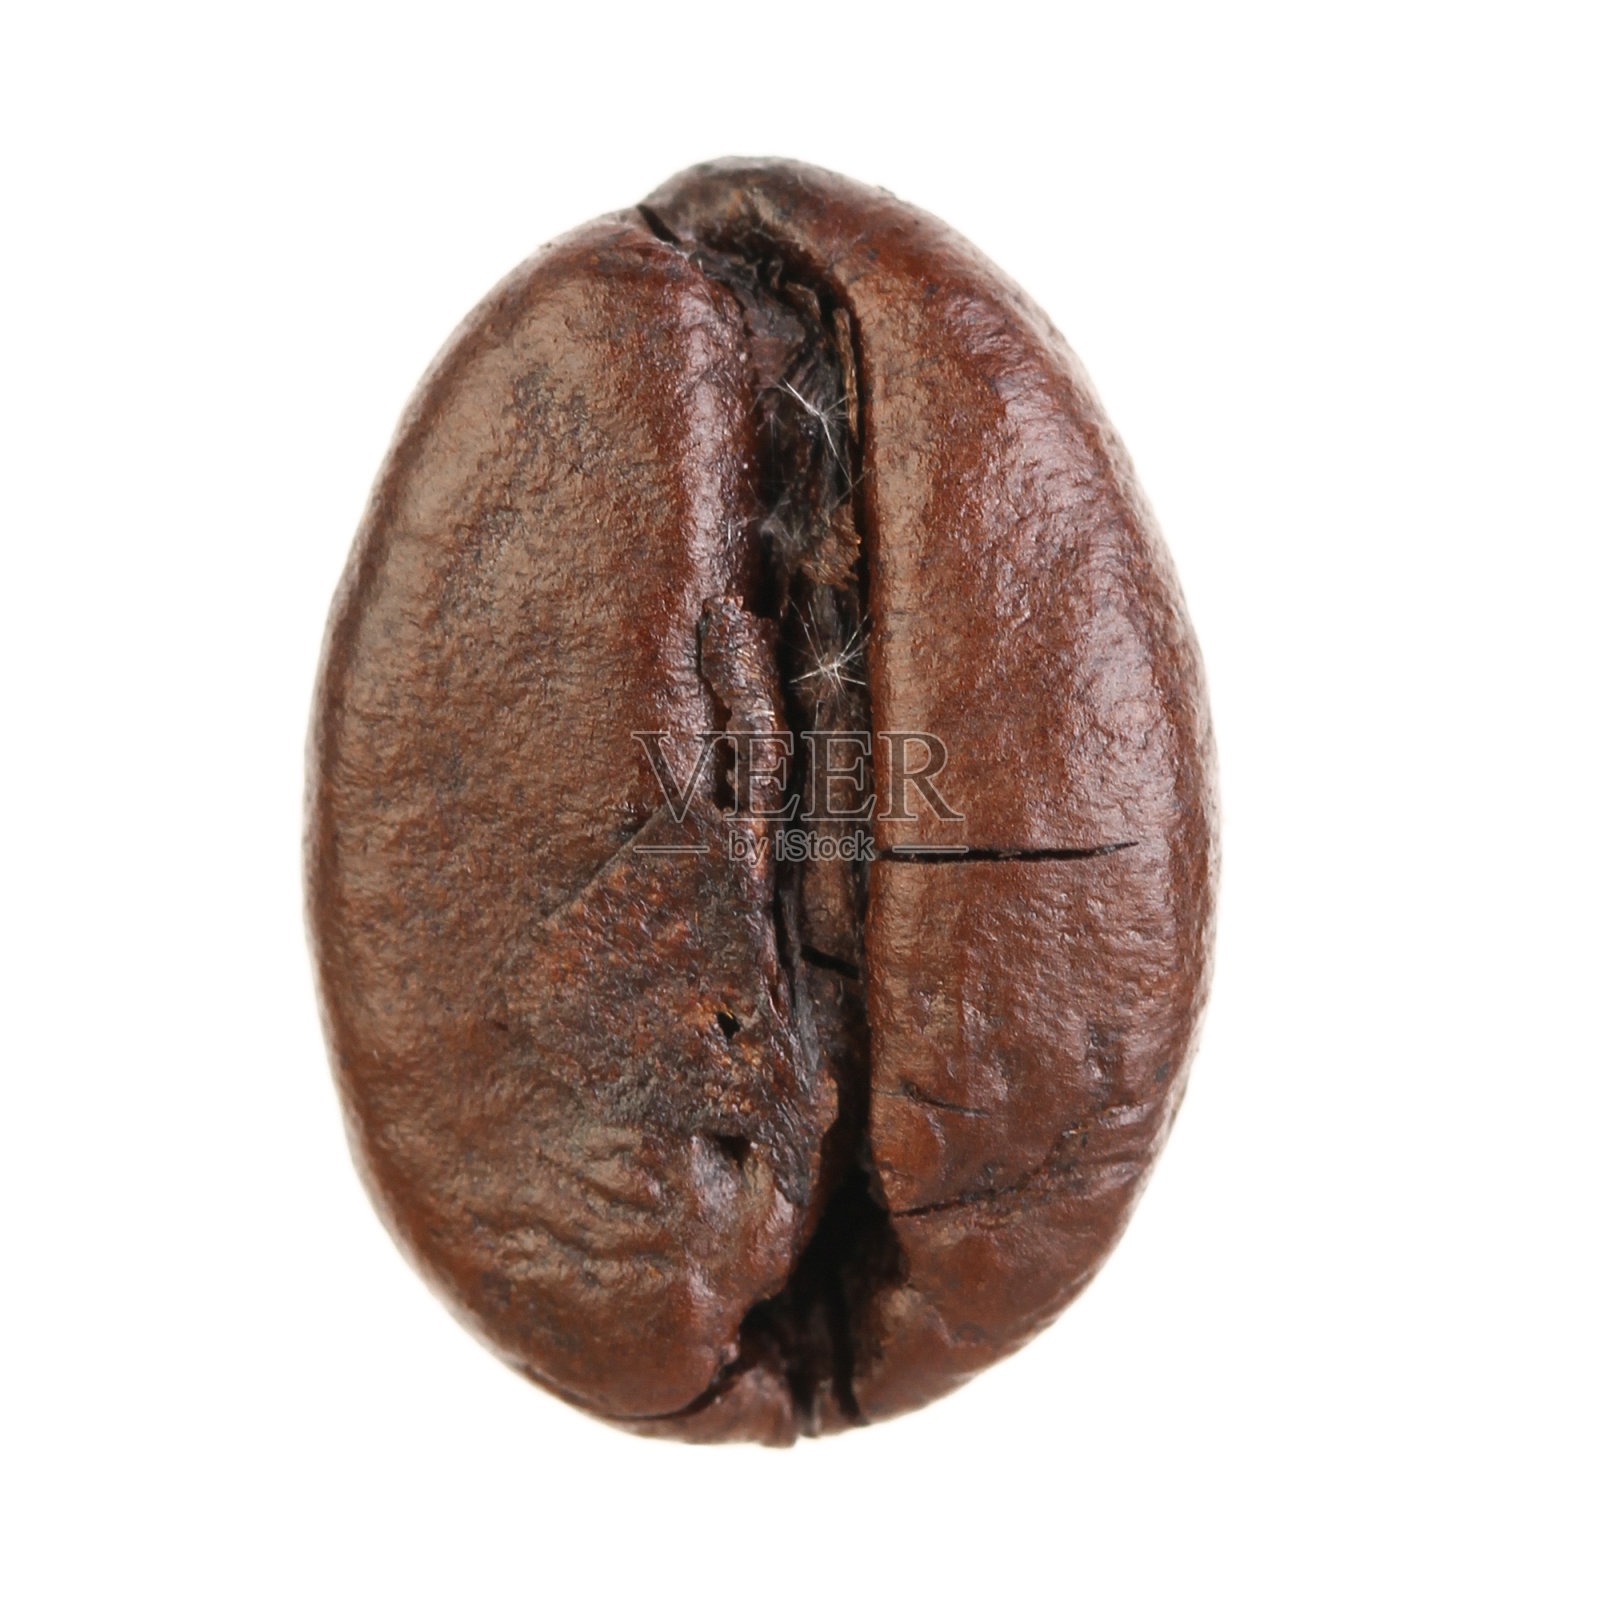 咖啡豆孤立在白色背景上照片摄影图片